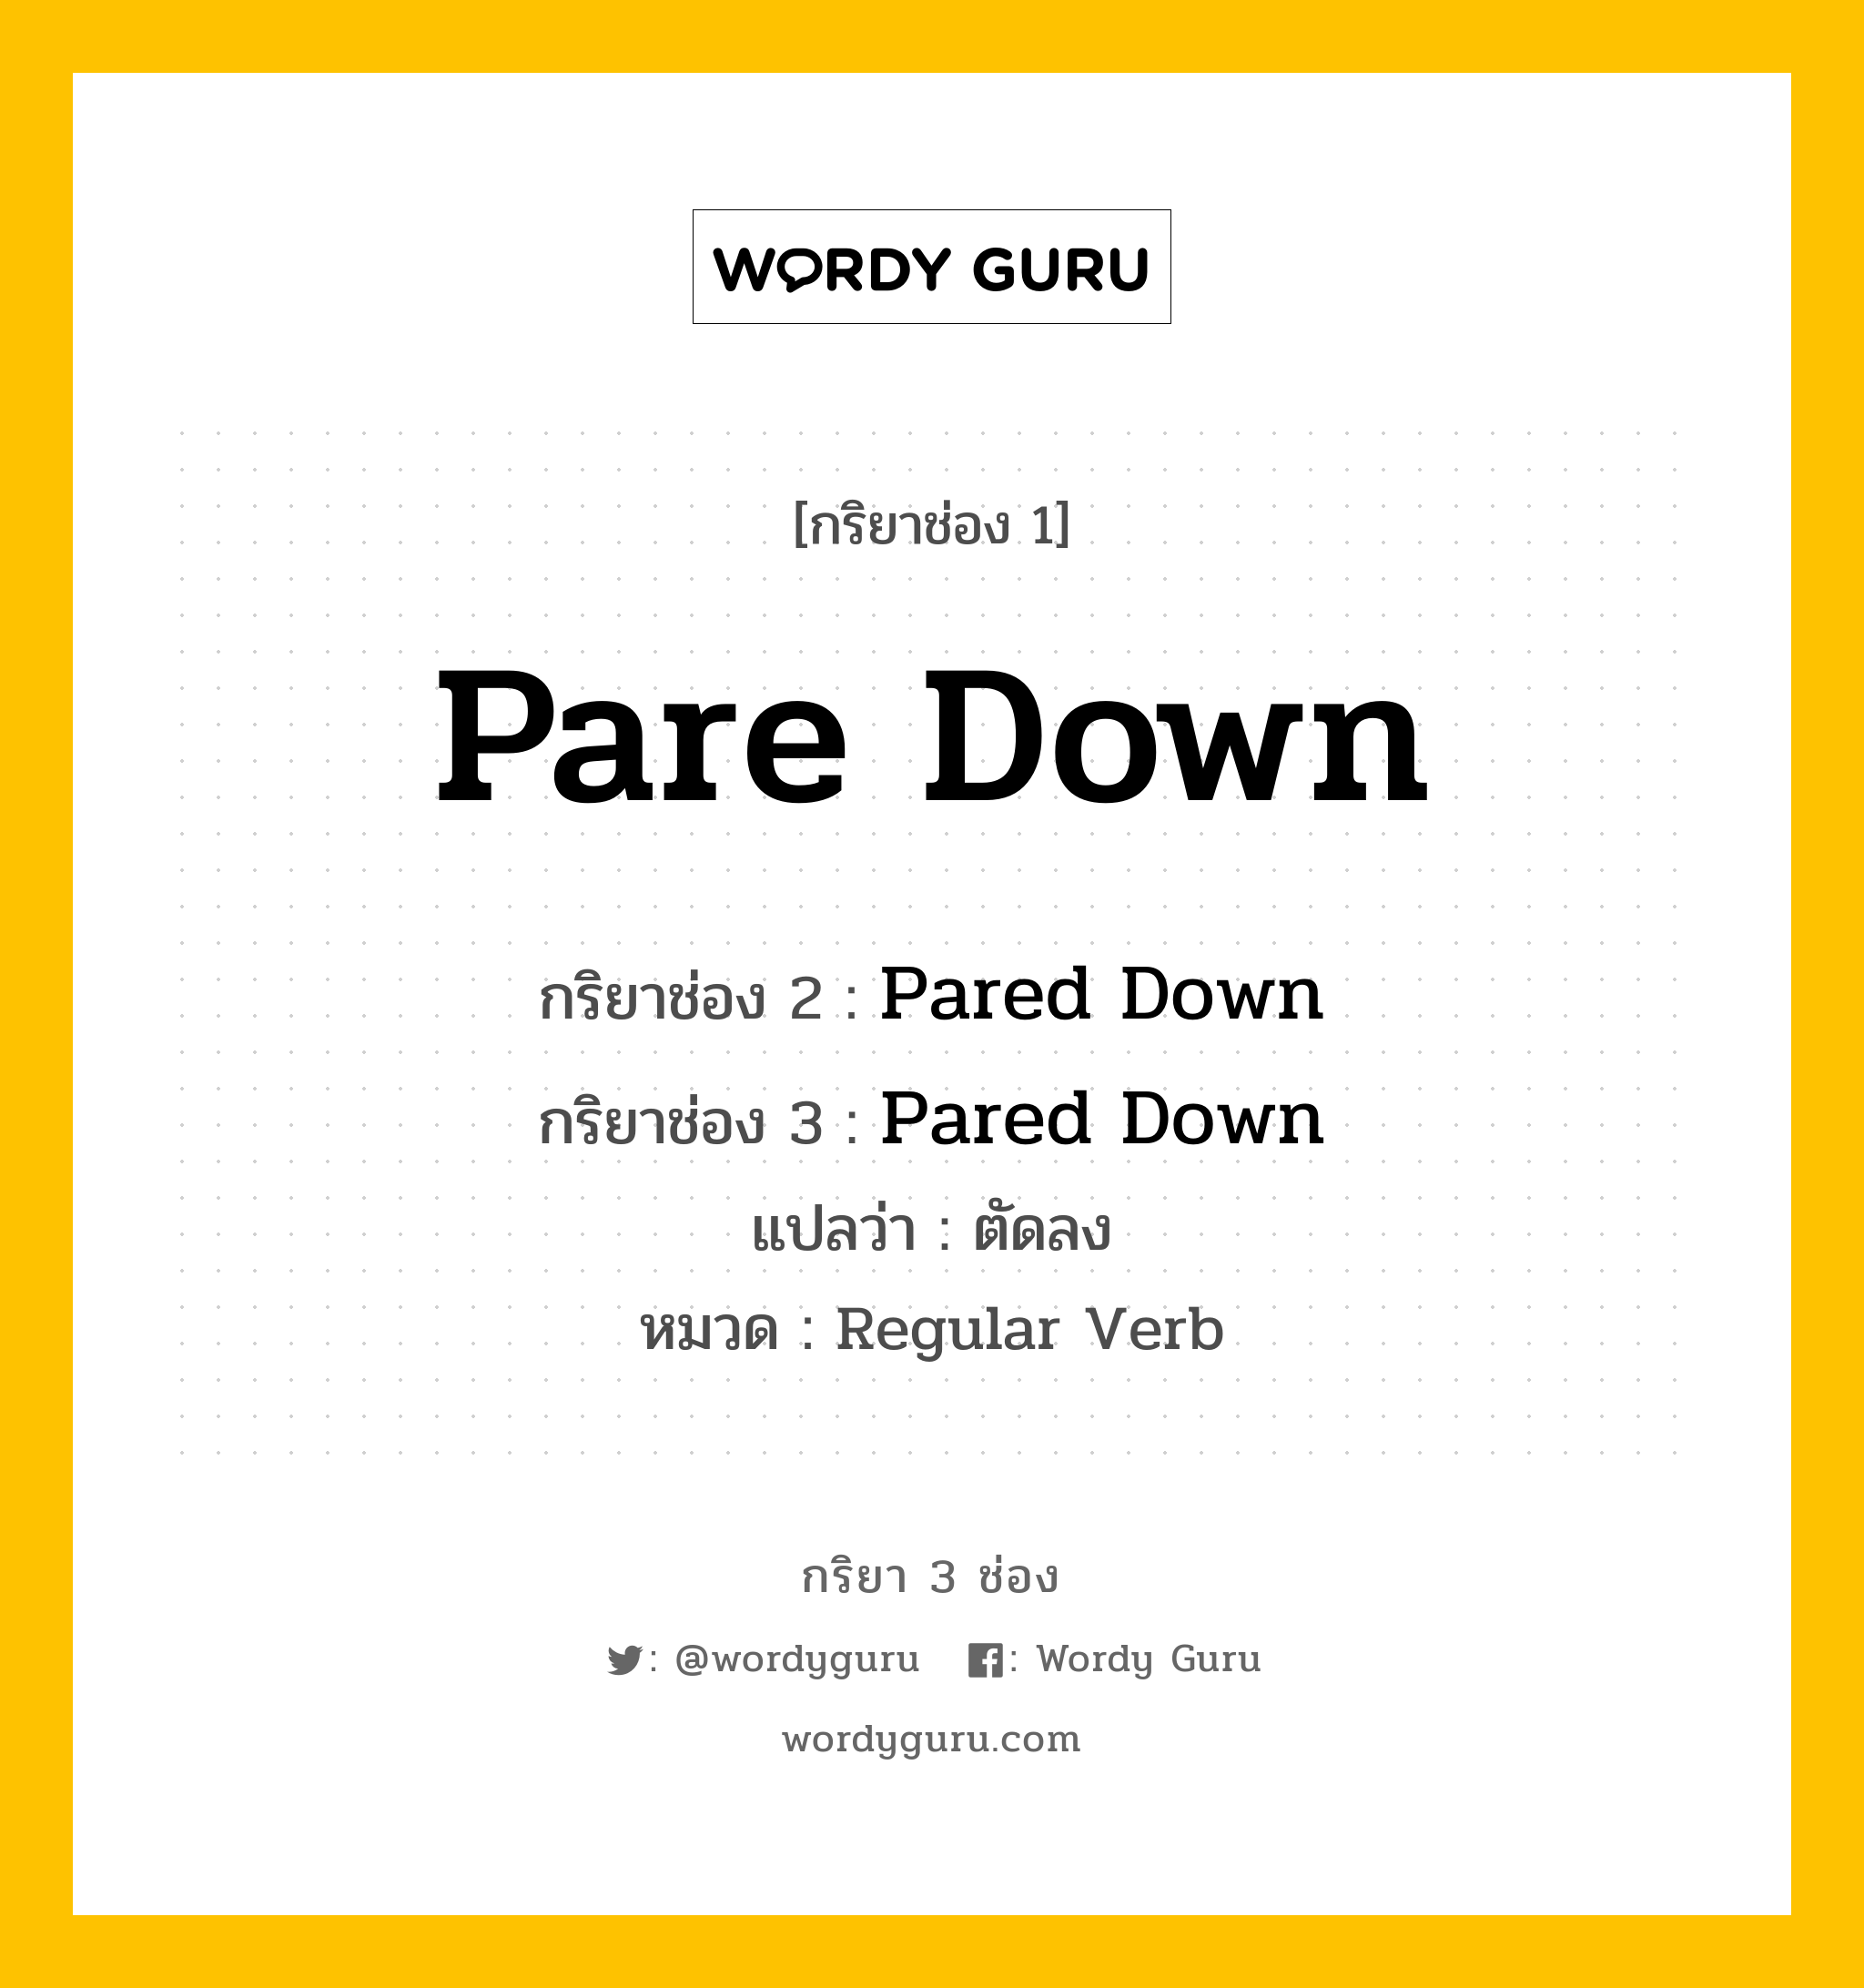 กริยา 3 ช่อง ของ Pare Down คืออะไร? มาดูคำอ่าน คำแปลกันเลย, กริยาช่อง 1 Pare Down กริยาช่อง 2 Pared Down กริยาช่อง 3 Pared Down แปลว่า ตัดลง หมวด Regular Verb หมวด Regular Verb